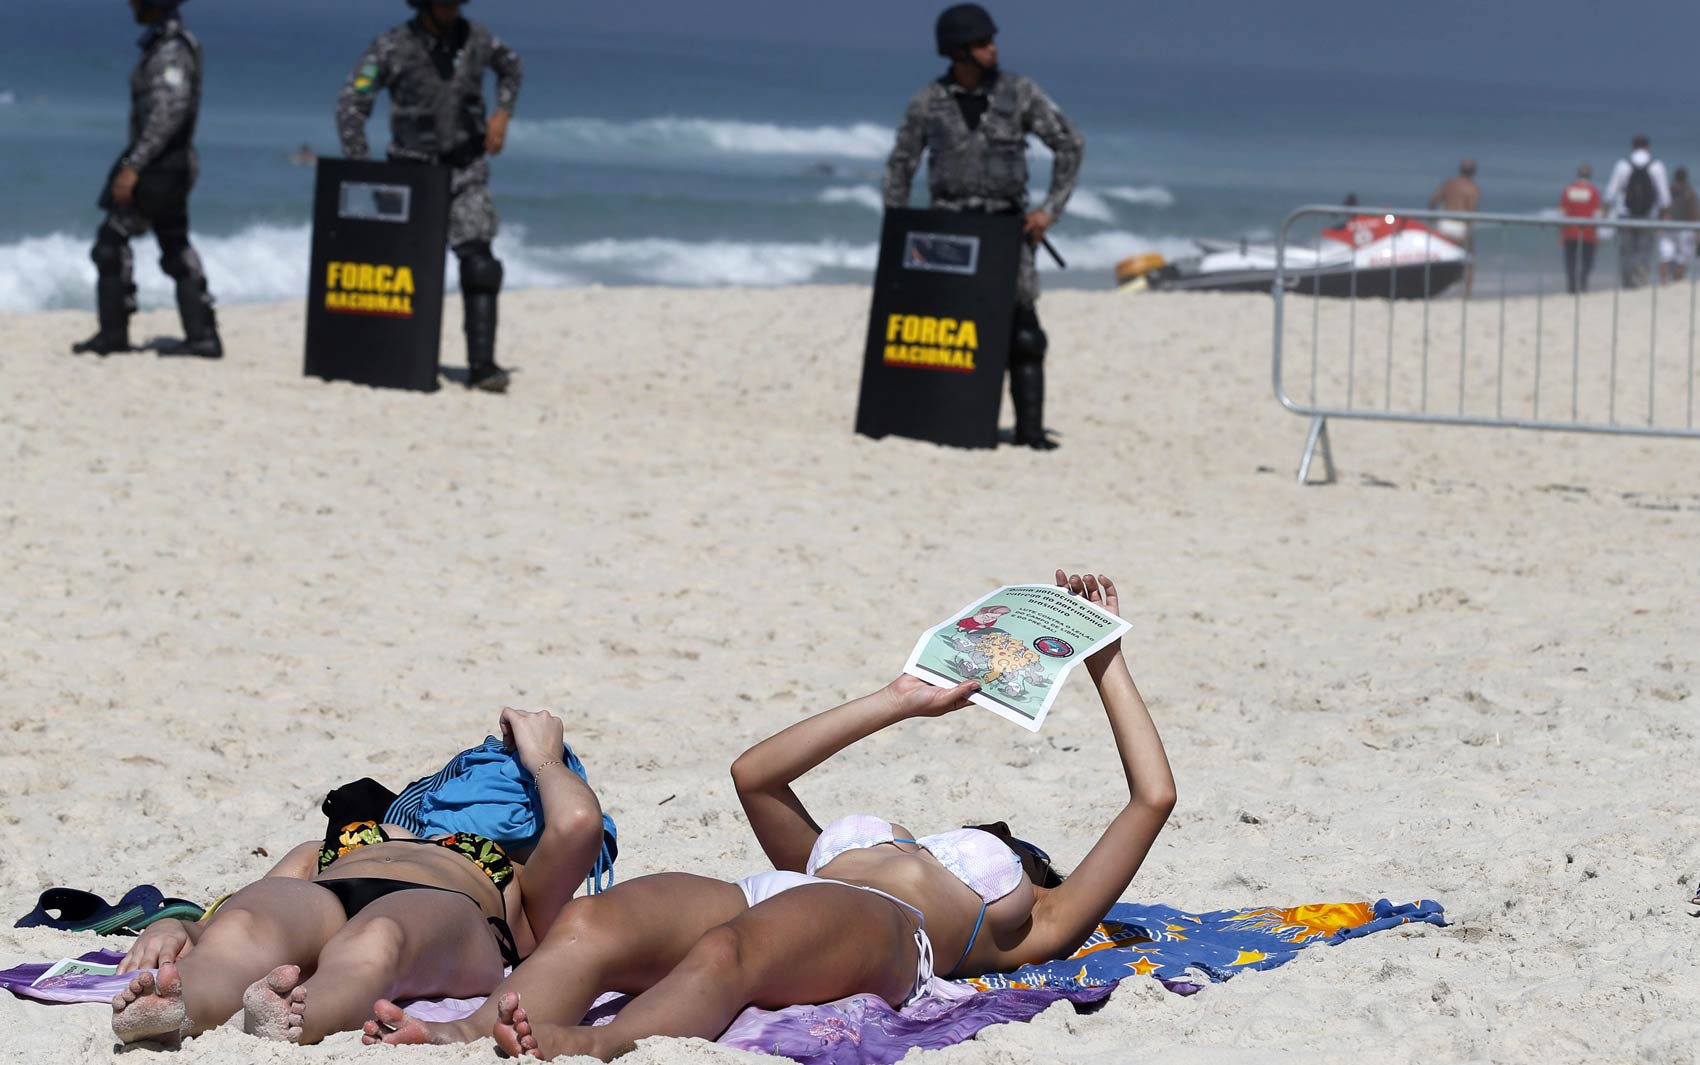 Banhistas tomam sol na praia da Barra da Tijuca, com militares da Força Nacional ao fundo